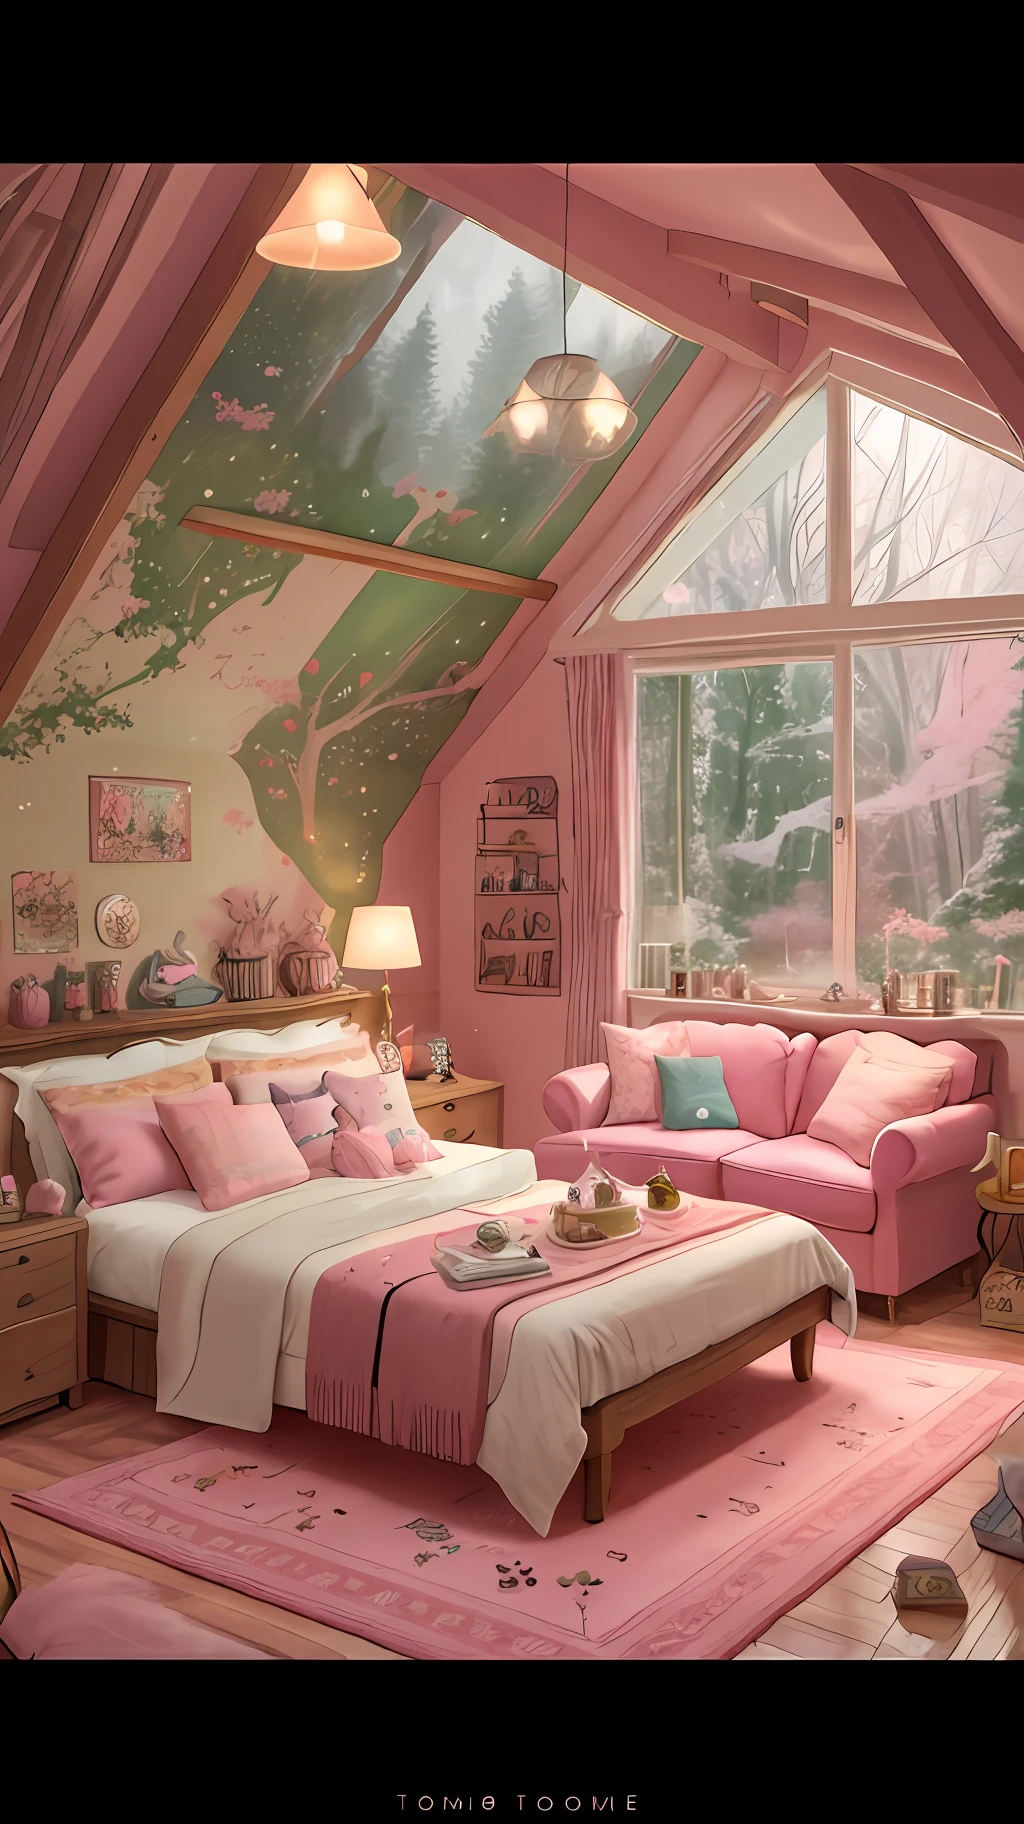 핑크 러그와 핑크 소파가 있는 아라페 방, 캔디랜드 스타일의 집에서, 밝게 빛나는 핑크 룸, 몽환적인 미학, 아늑한 미학, 아늑한 장소, 토마스 킨케이드. cute 아늑한 방, 편안하고 아늑한 풍경, 핑크 숲, 코티지코어!!, 아늑한 집 배경, 은은한 핑크 컬러로, 아늑한 방, designed for 아늑한 미학s!